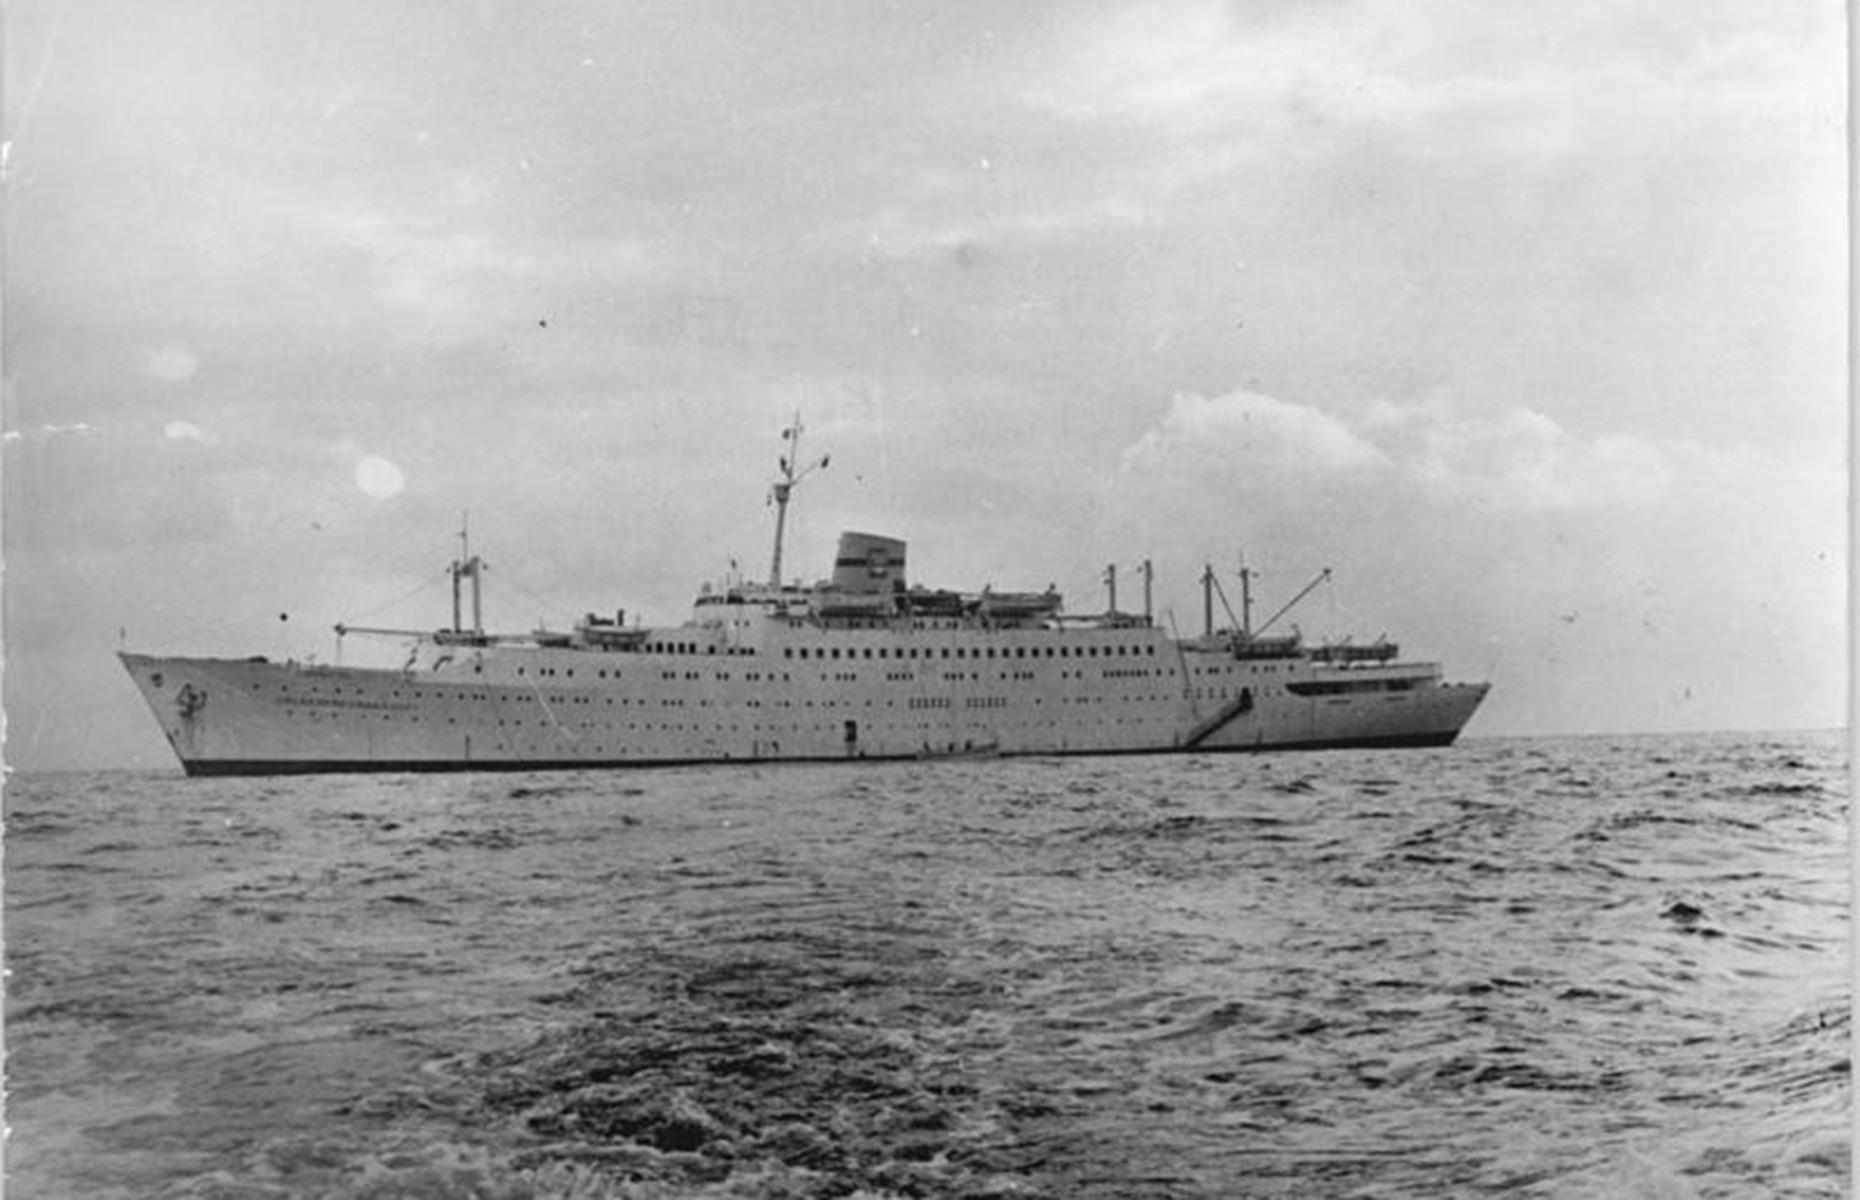 <p>Die „Astoria“ wurde in den 1940ern als Transatlantikkreuzer für die Swedish American Line gebaut und hieß ursprünglich MV „Stockholm“. 1993 wurde sie zum Kreuzfahrtschiff umgebaut. Nach einer Reihe von Eigentümerwechseln landete sie 2015 bei Cruise & Maritime Voyages und eroberte sich aufgrund ihres Vintage-Designs schnell eine treue Fangemeinde.</p>